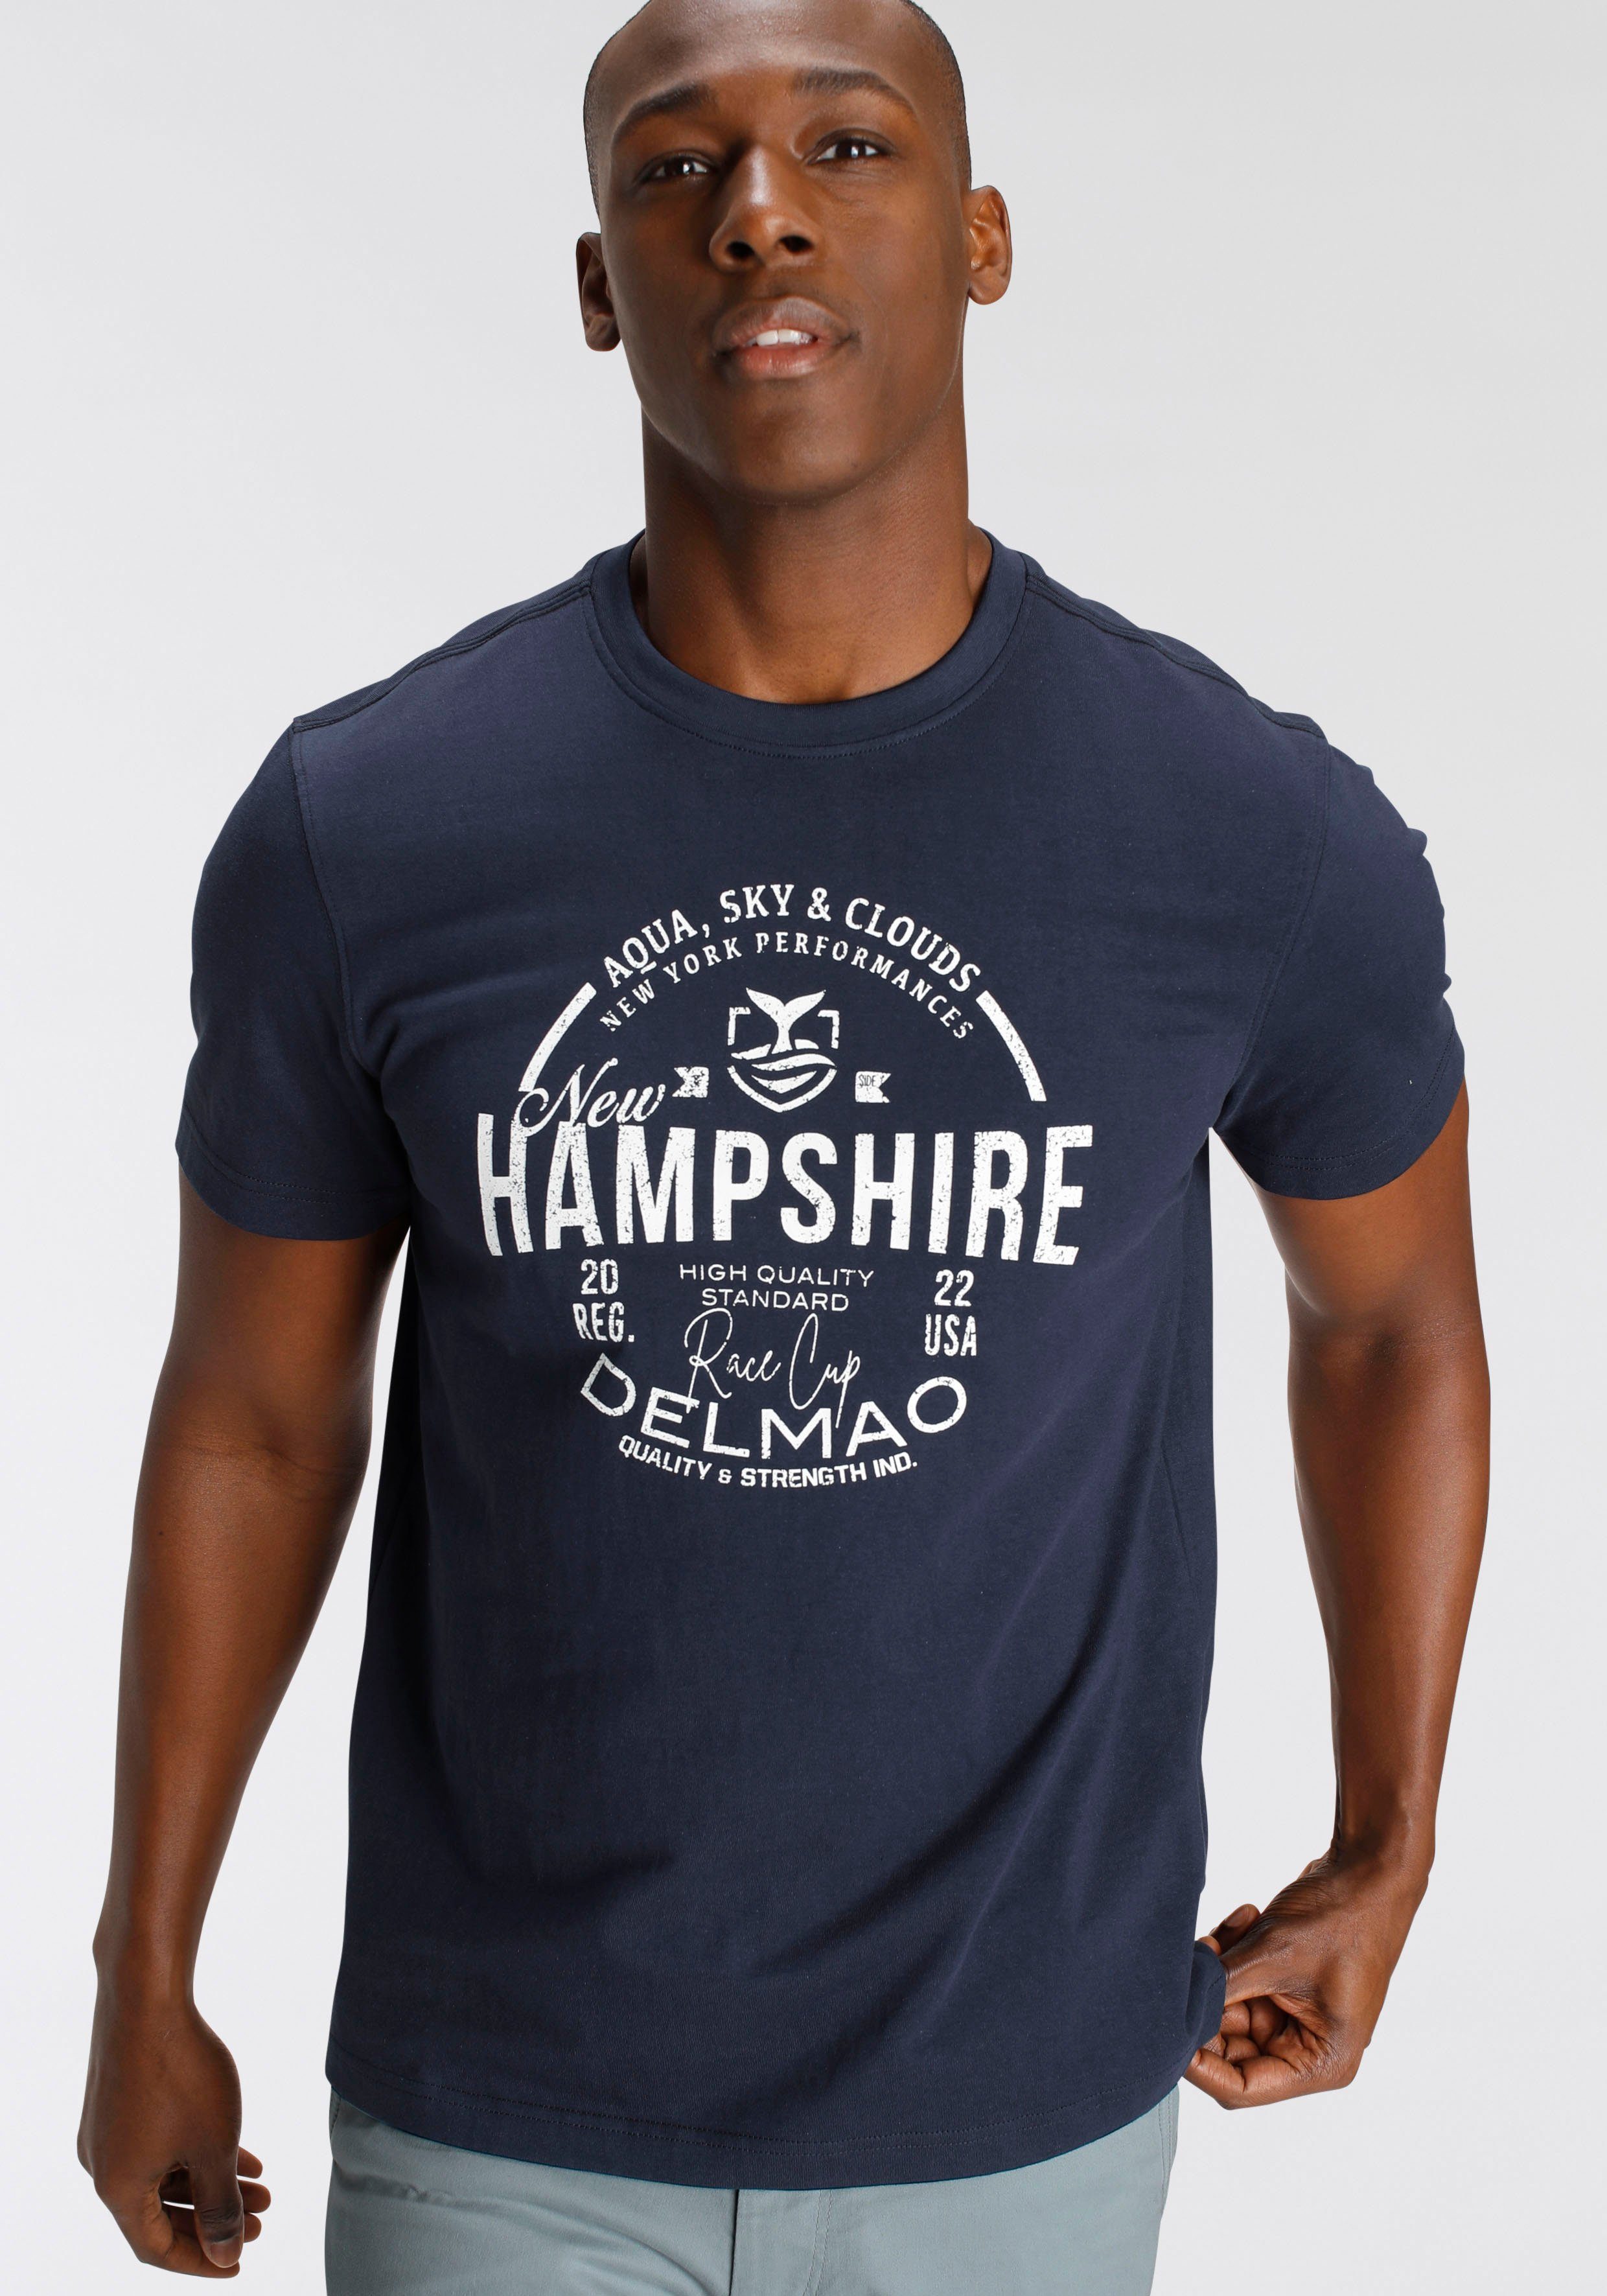 NEUE DELMAO T-Shirt - Brustprint MARKE! marine mit